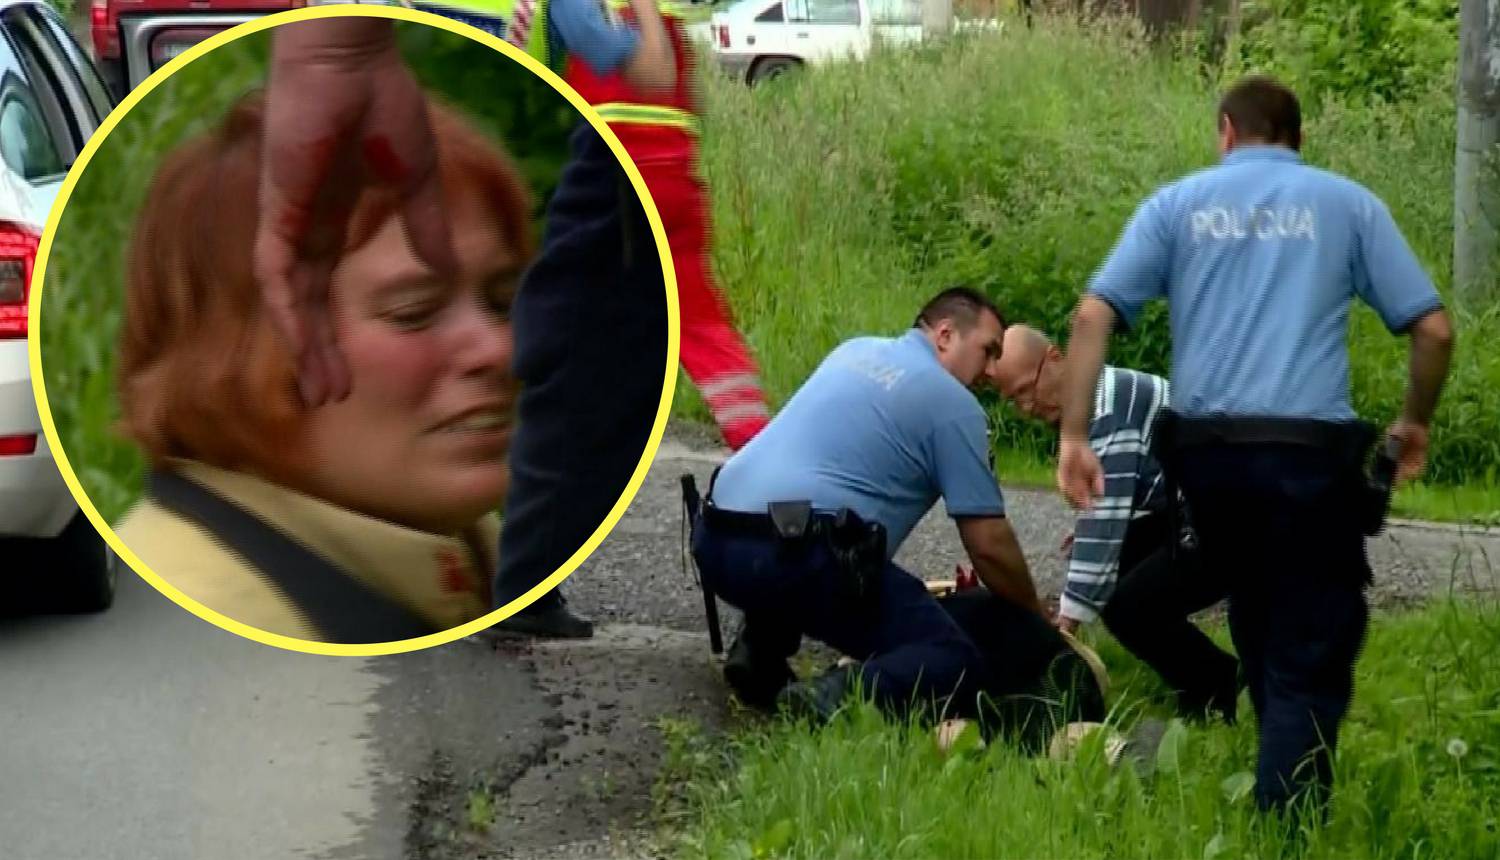 Lice s tjeralice: Amerikanka ubola policajca nožem u vrat